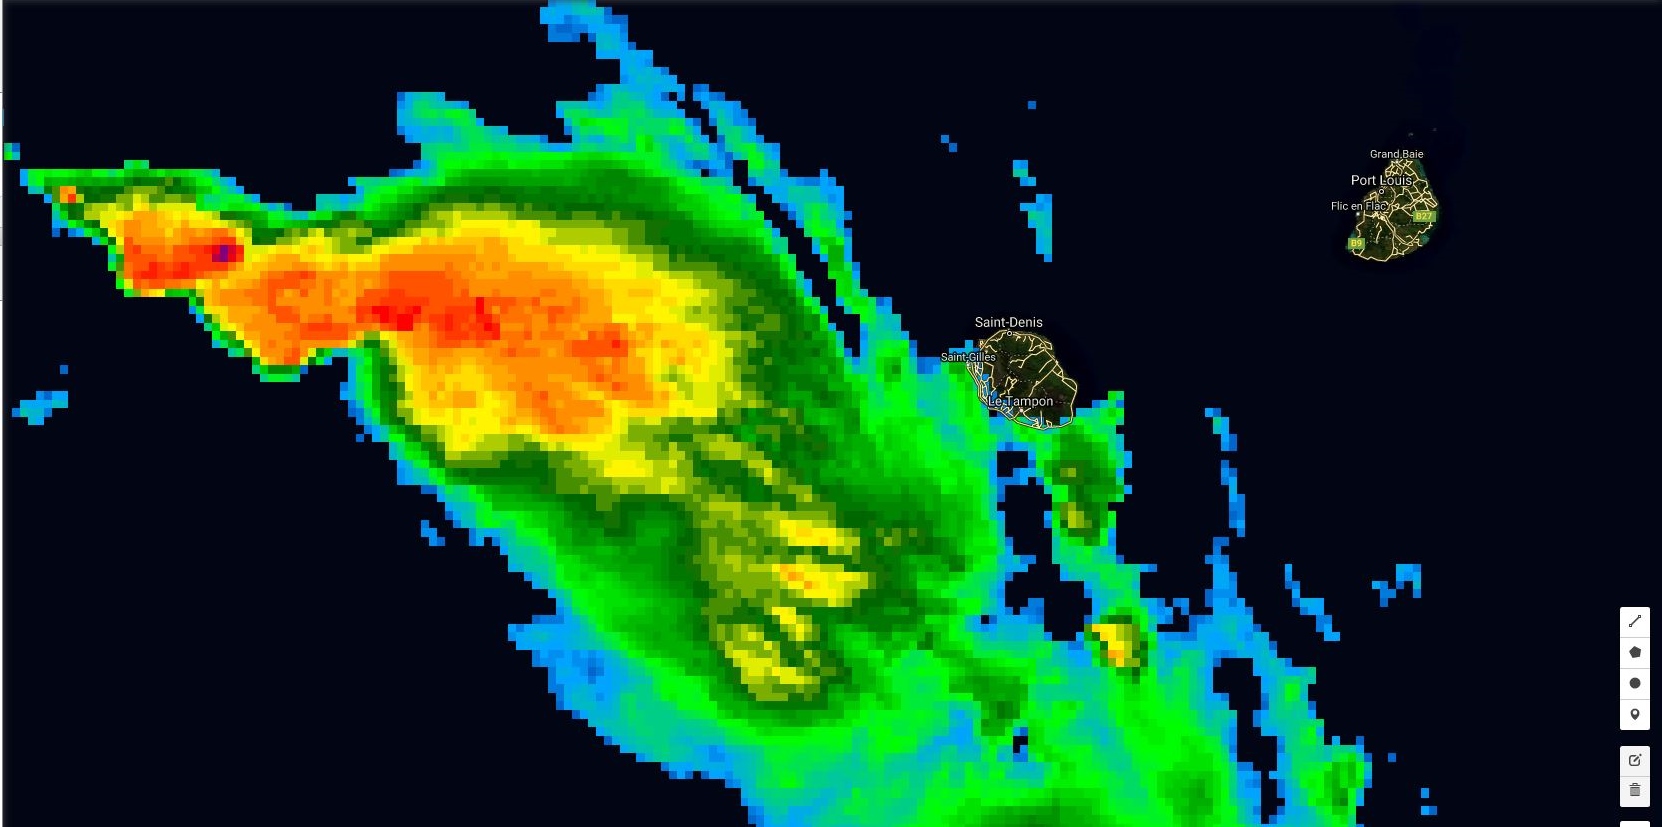 Satellite à 22h: la Réunion est en bordure du système et commence a essuyé des passages d'averses.